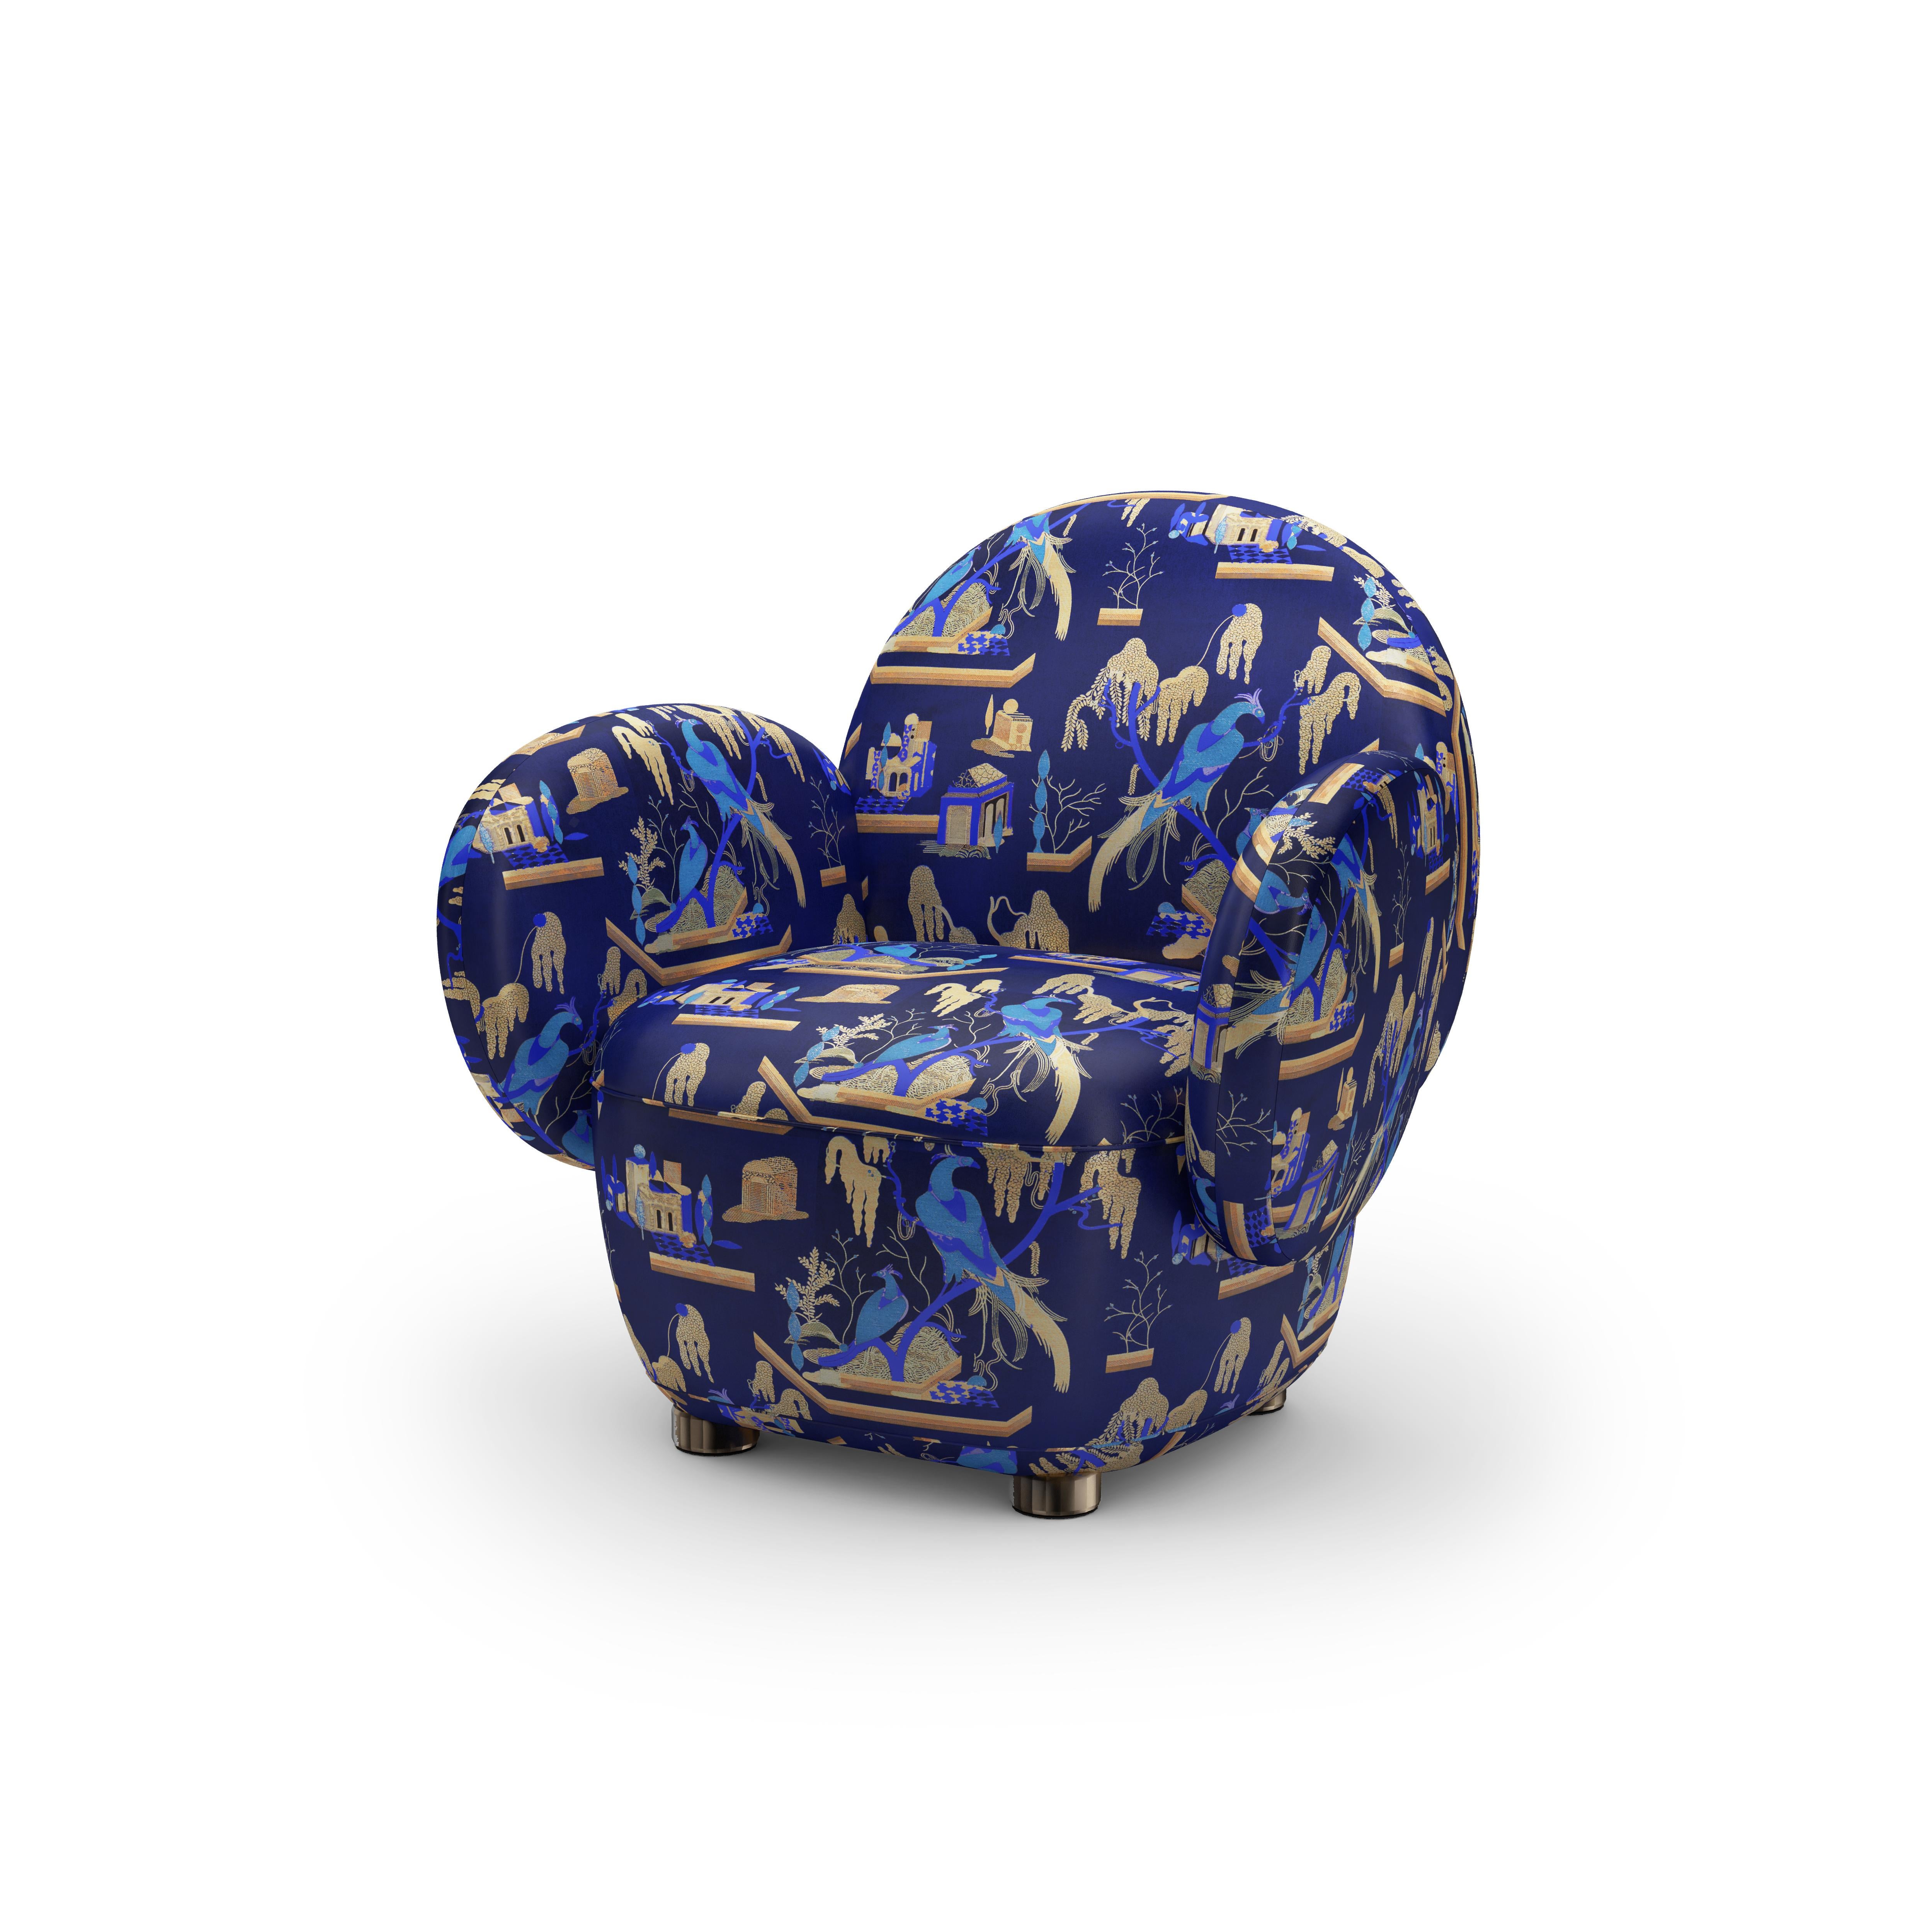 Dolce Armchair ist ein exquisites Einsitzer-Sofa, das allein oder zusammen mit dem Dolce Sofa verwendet werden kann. Er ist mit dem plüschigen blauen Jacquard-Stoff This Must Be The Place von Dedar Milano gepolstert. Ideal zum spielerischen